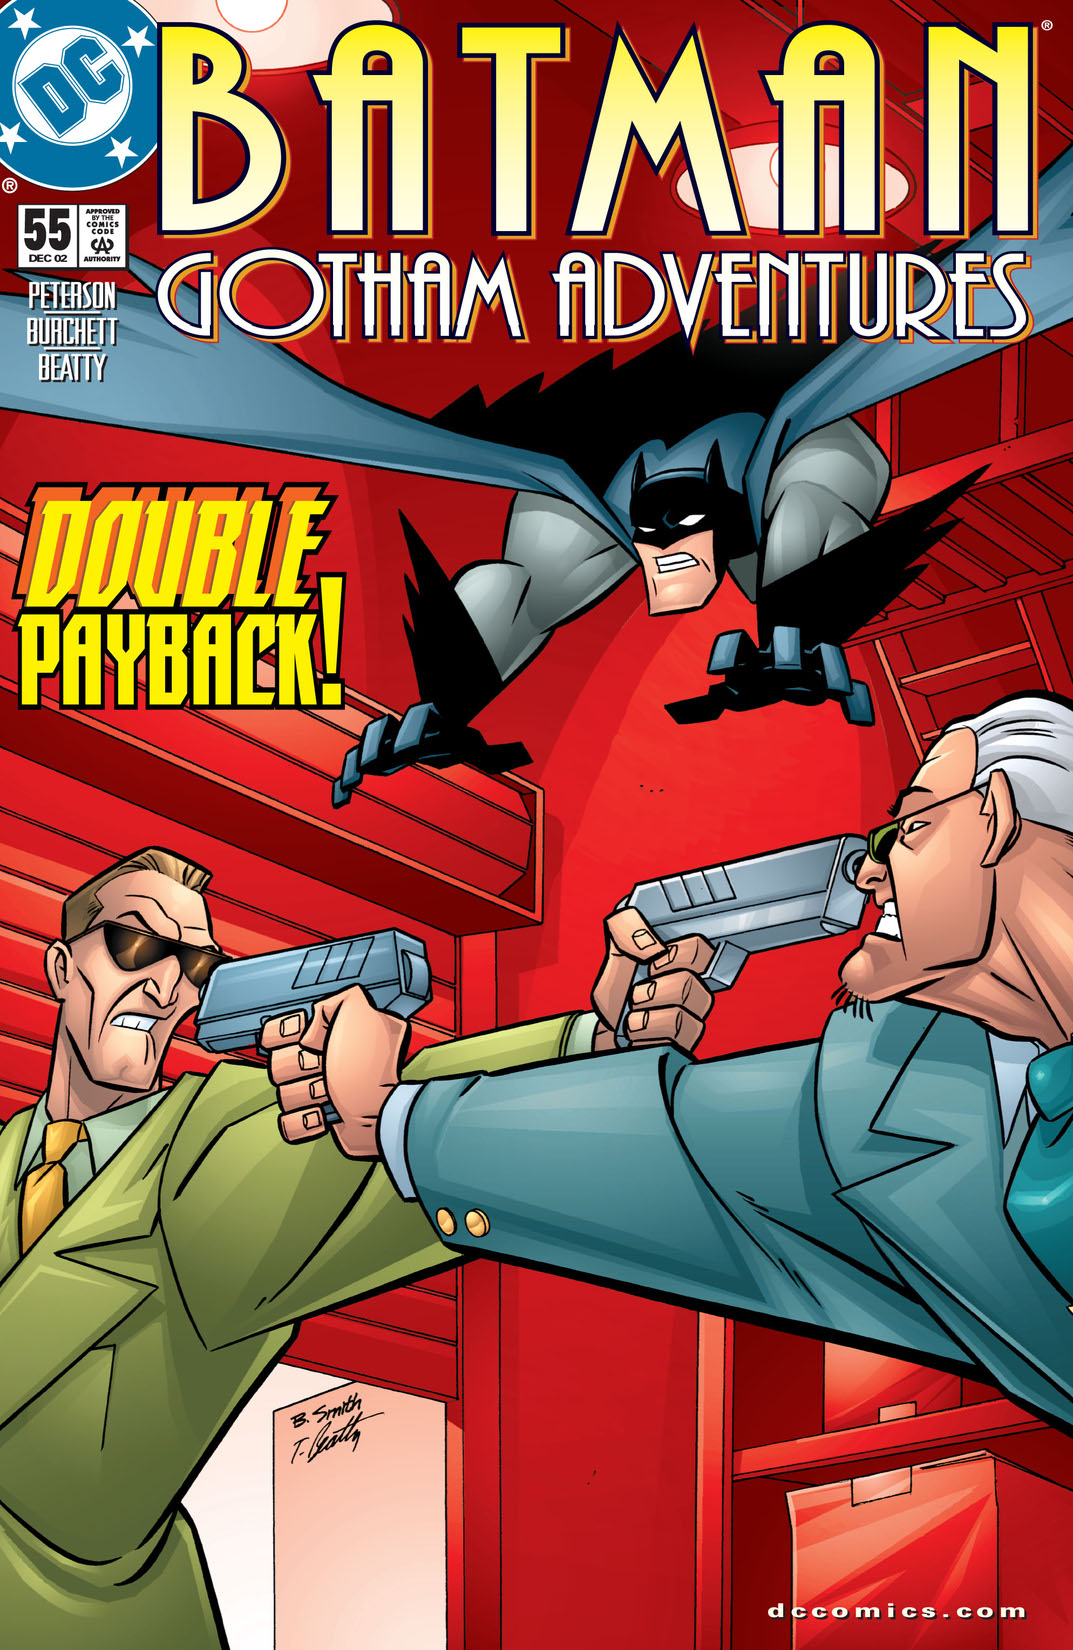 Batman: Gotham Adventures #55 preview images